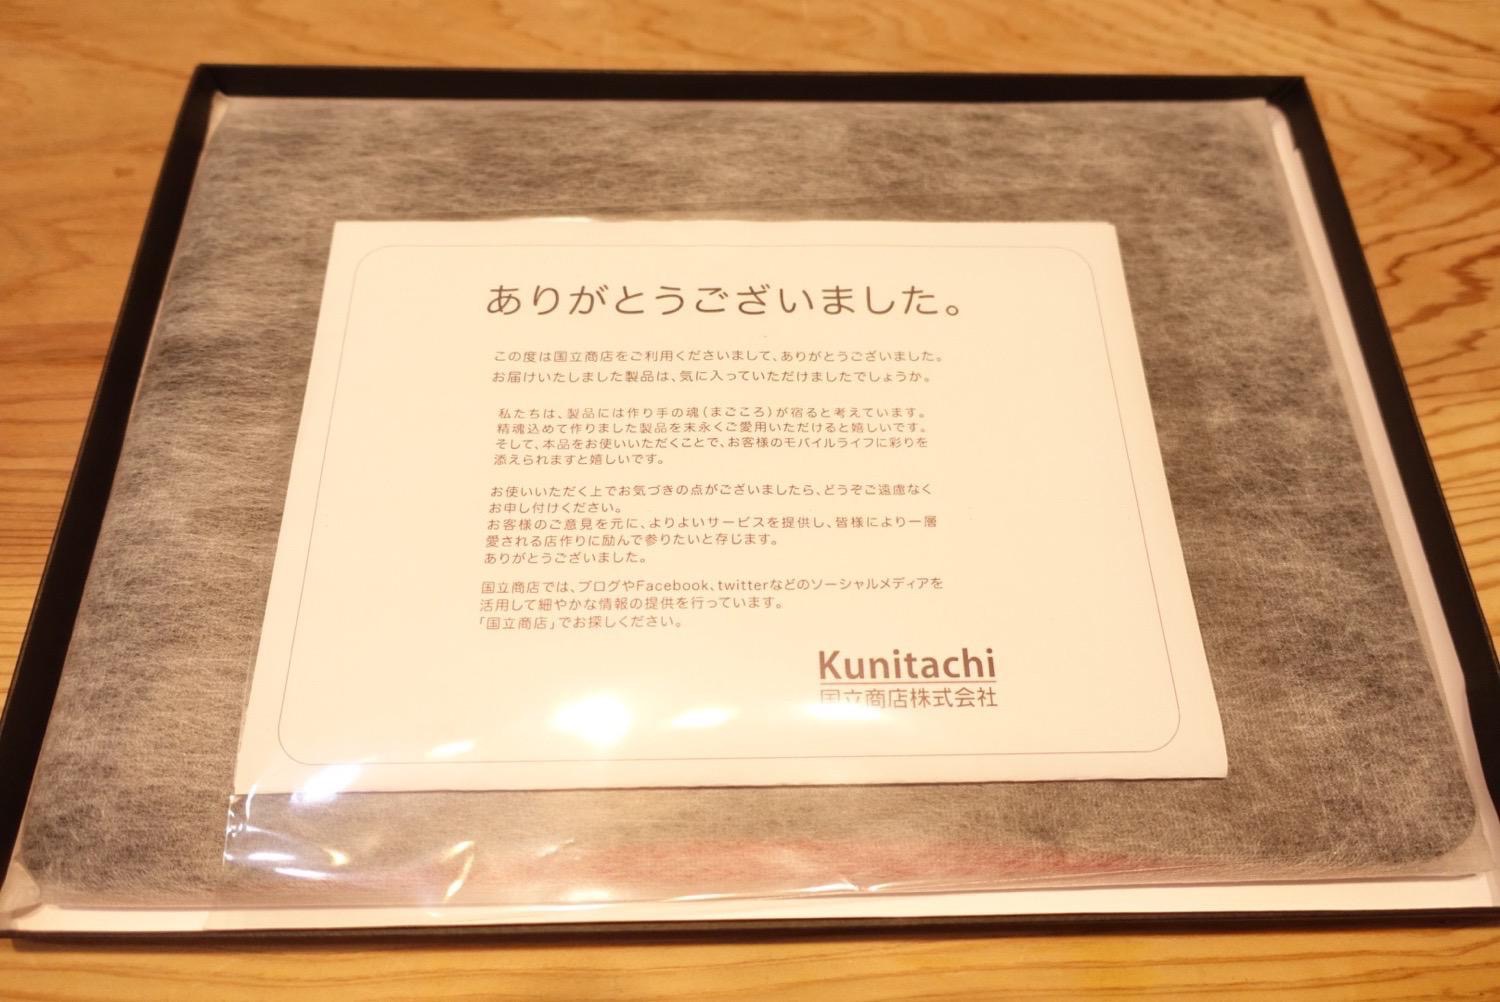 Kunitachimacbookcase3